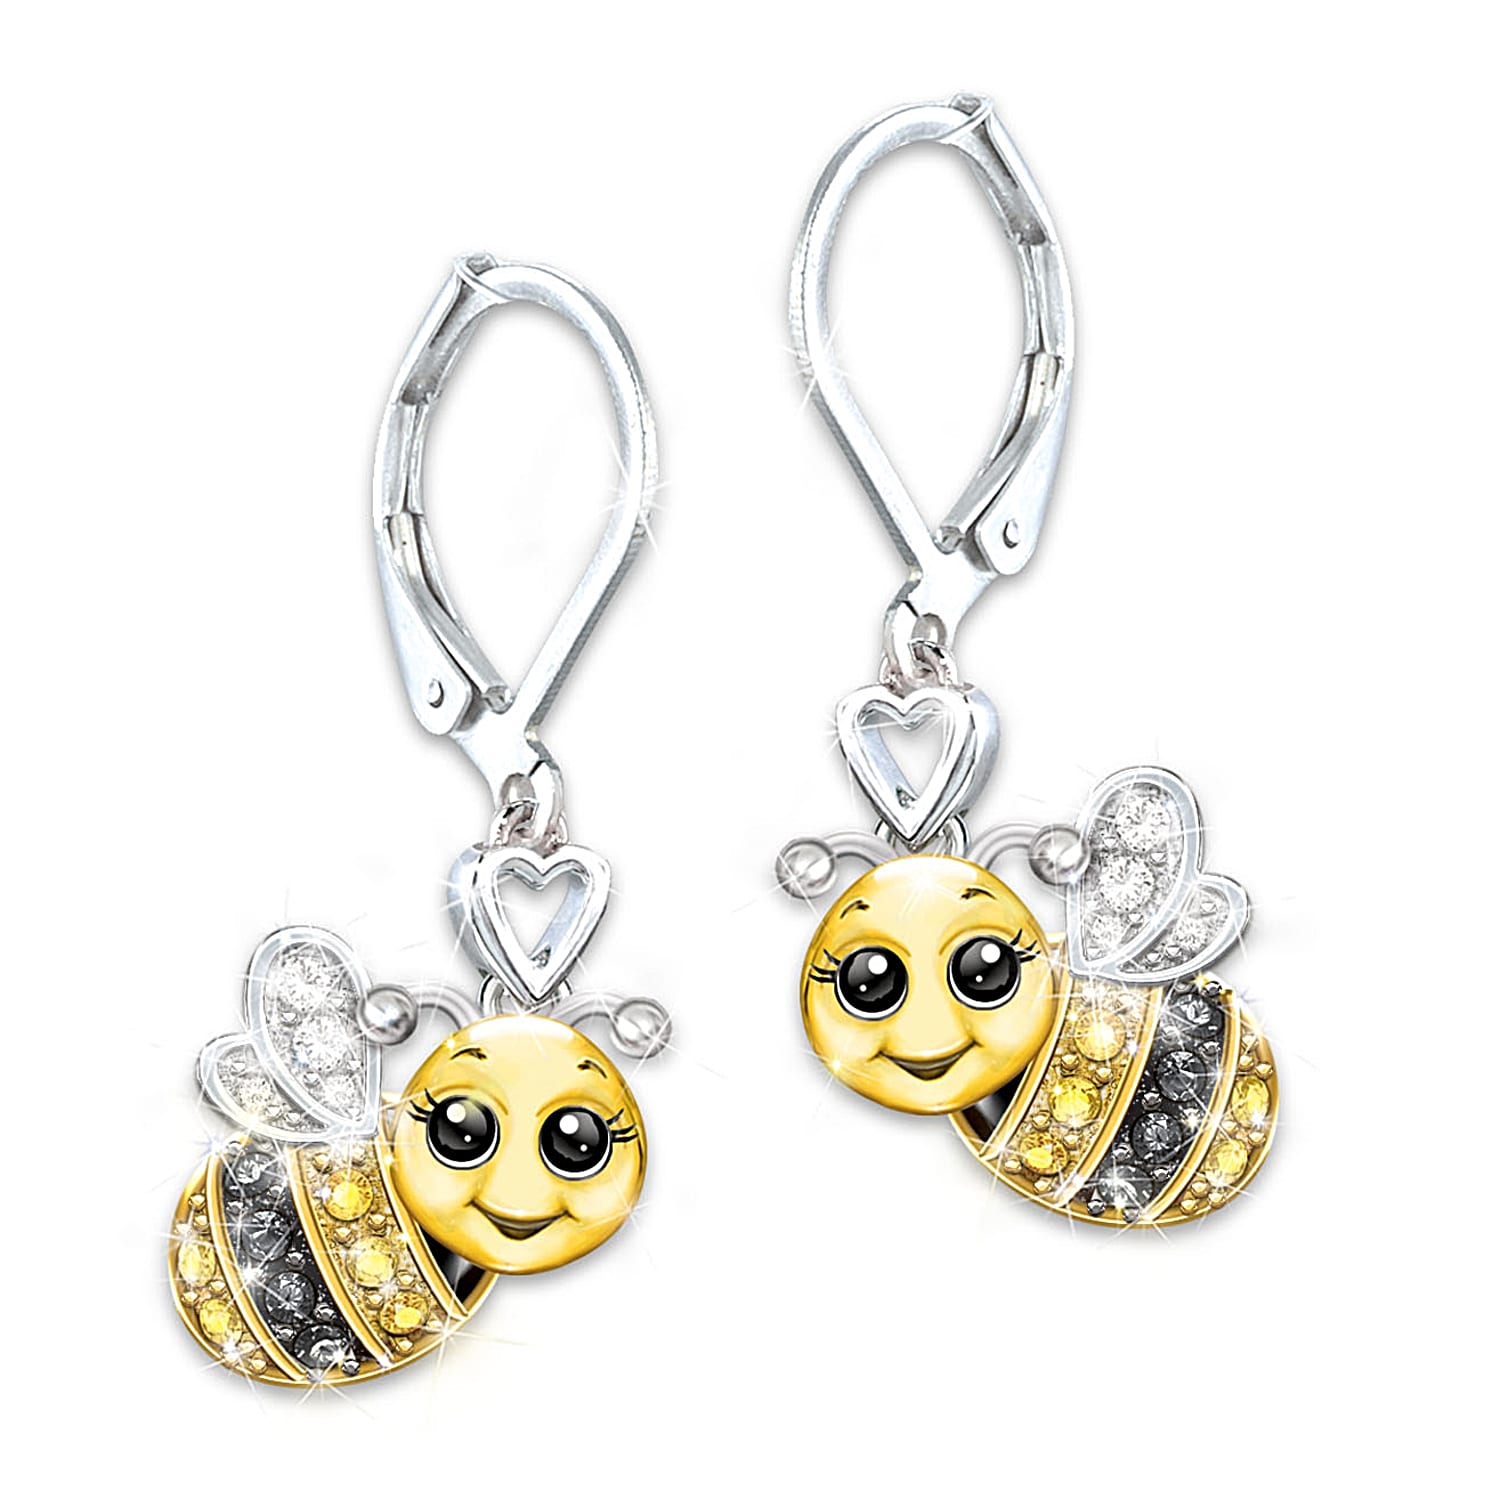 Sunflower Wishes and Honey Bee Kisses Earrings – Crafty Desert Penguin